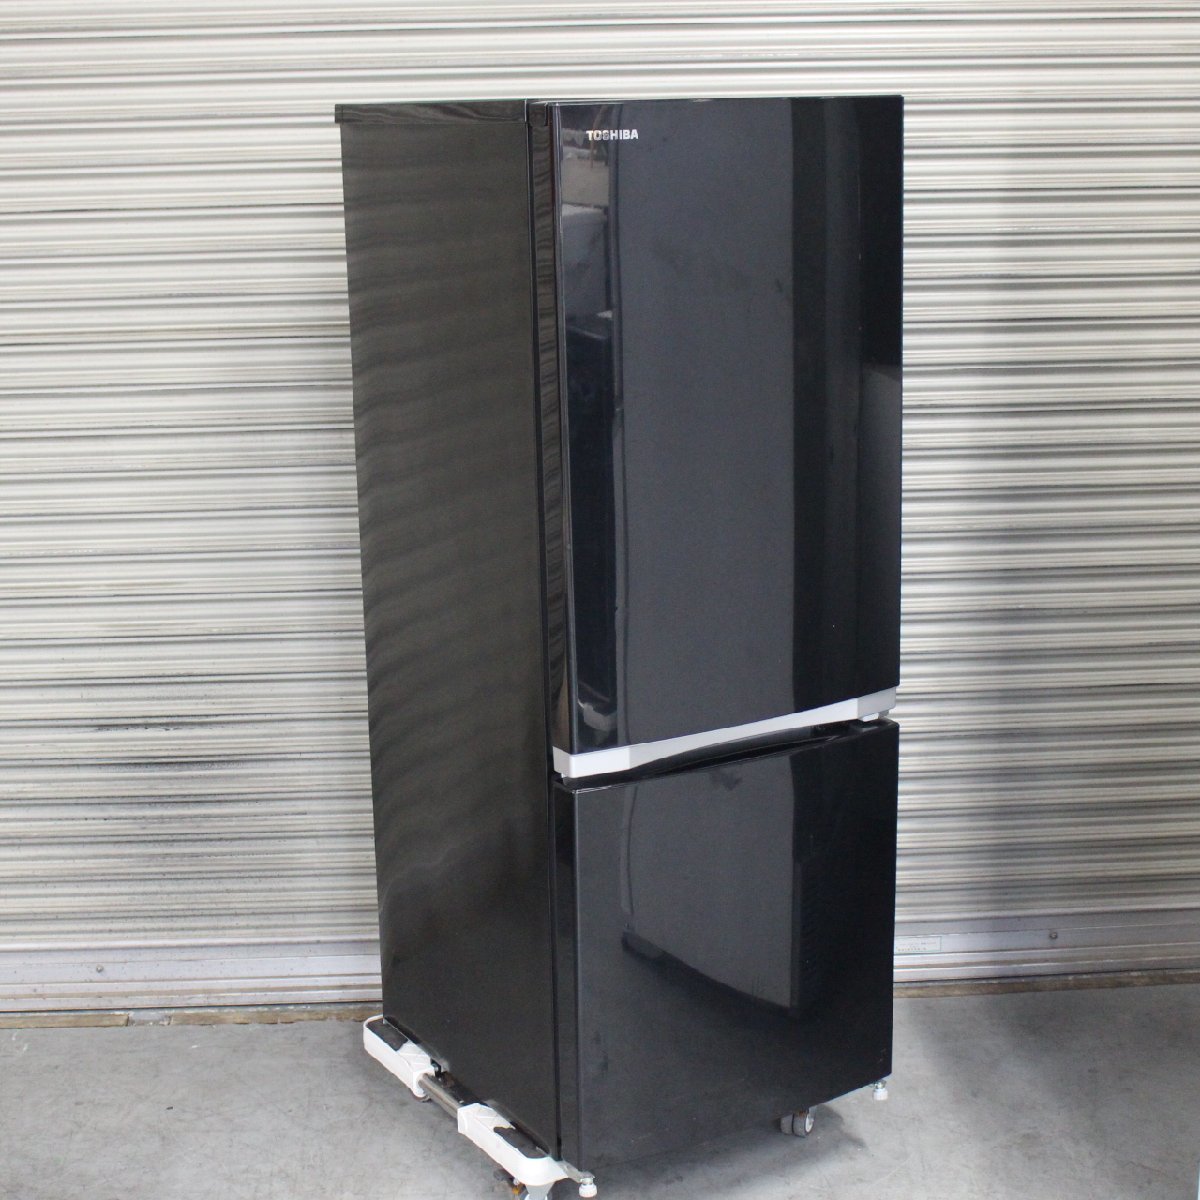 横浜市西区にて 東芝 冷凍冷蔵庫 GR-M15BS 2018年製 を出張買取させて頂きました。